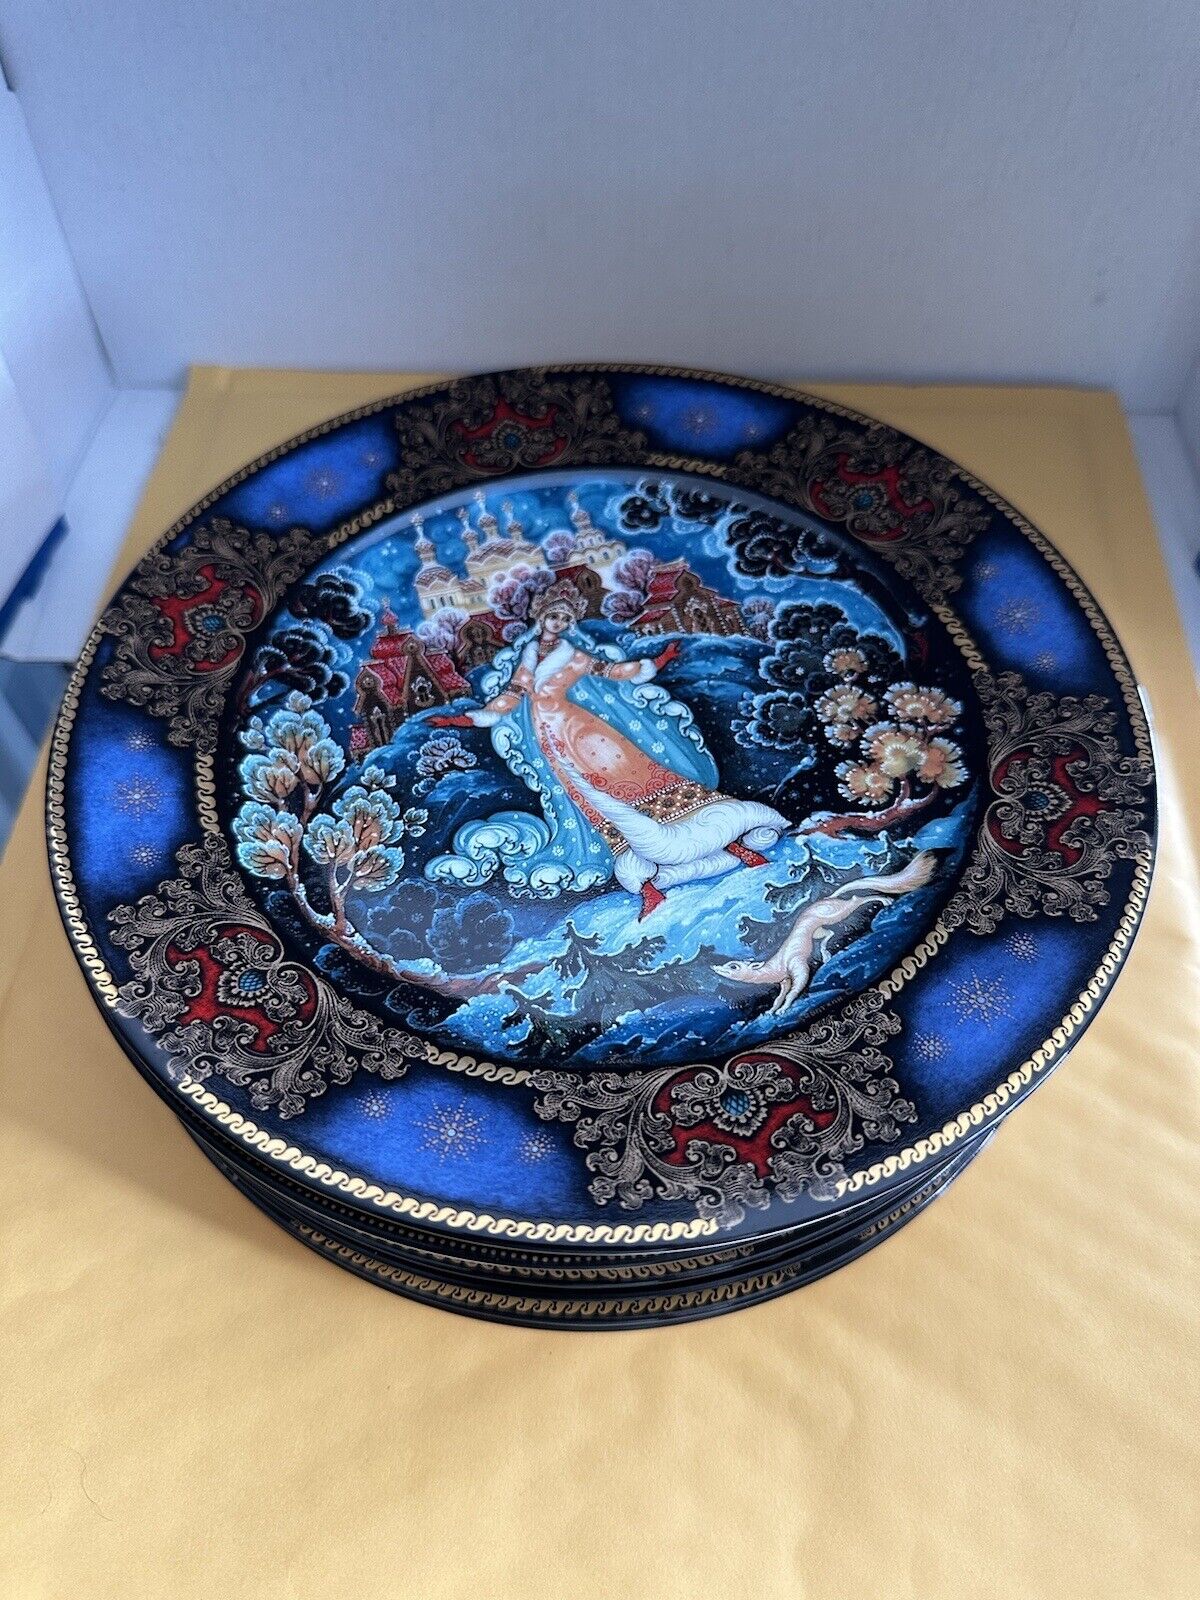 Seven VTG Russian Porcelain Collection Plates